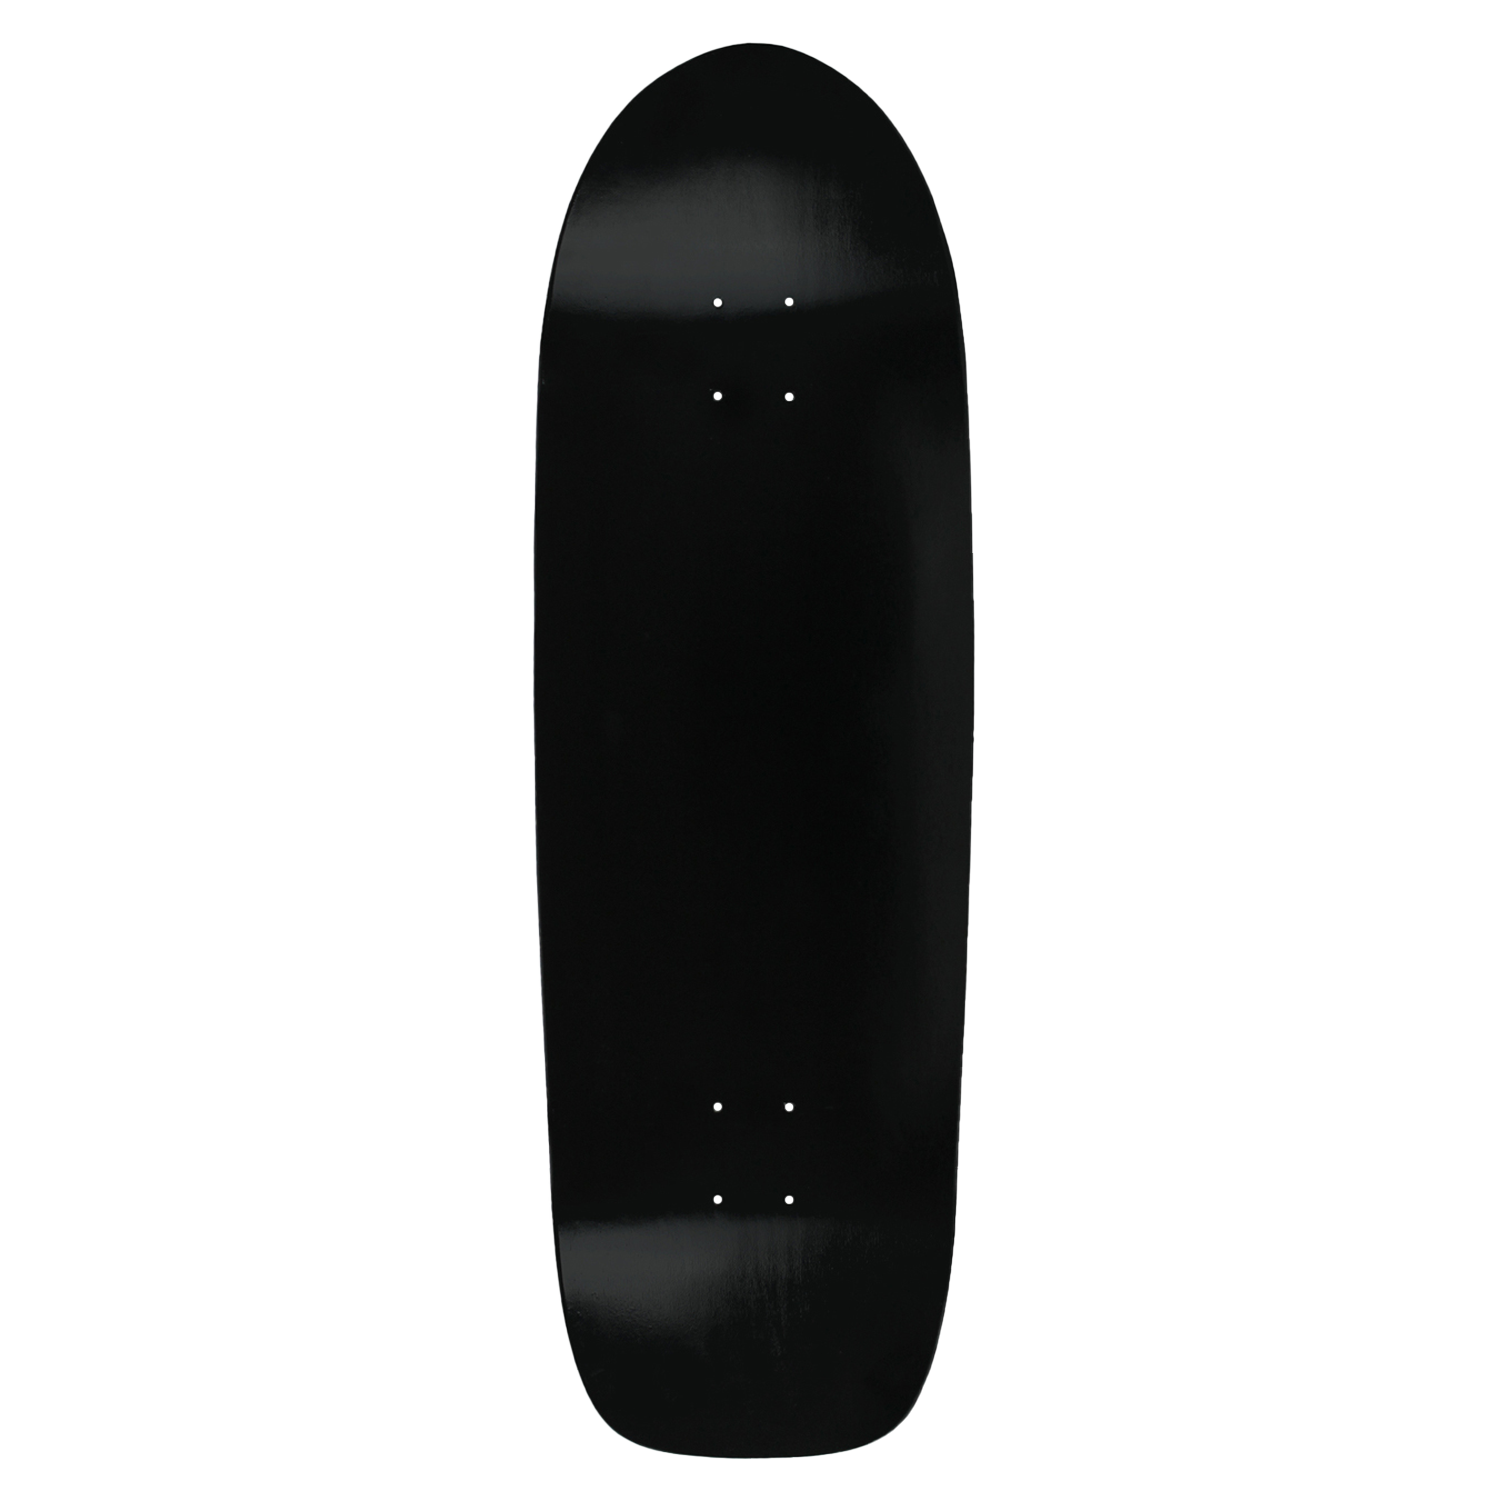 Moose Skateboard Cruiser Deck White 8" x 26.5" BRAND NEW IN SHRINK 